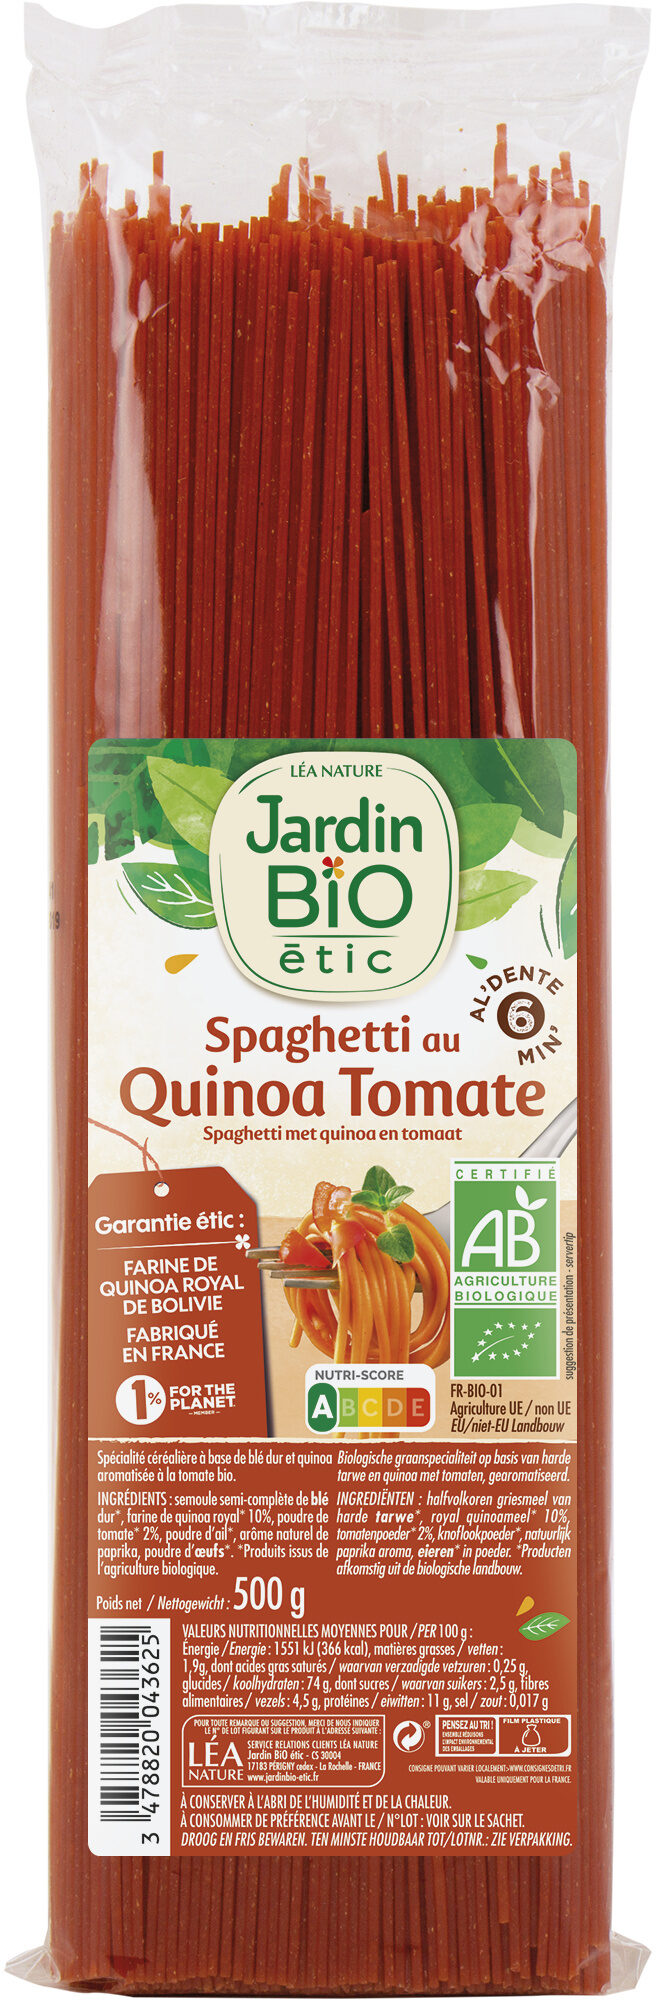 Spaghetti au Quinoa Tomate - Produit - fr